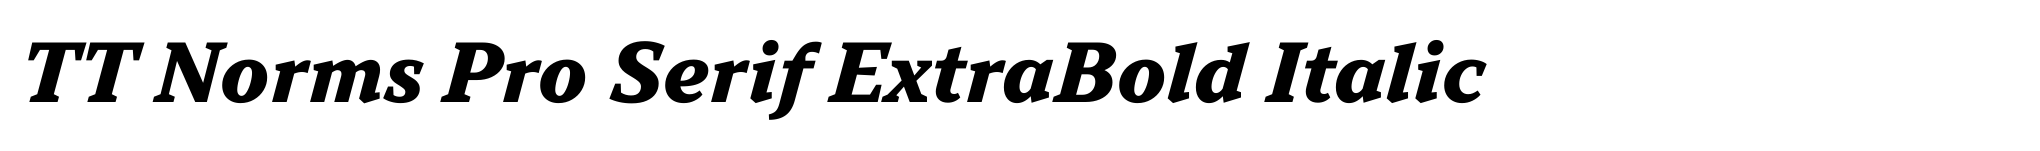 TT Norms Pro Serif ExtraBold Italic image